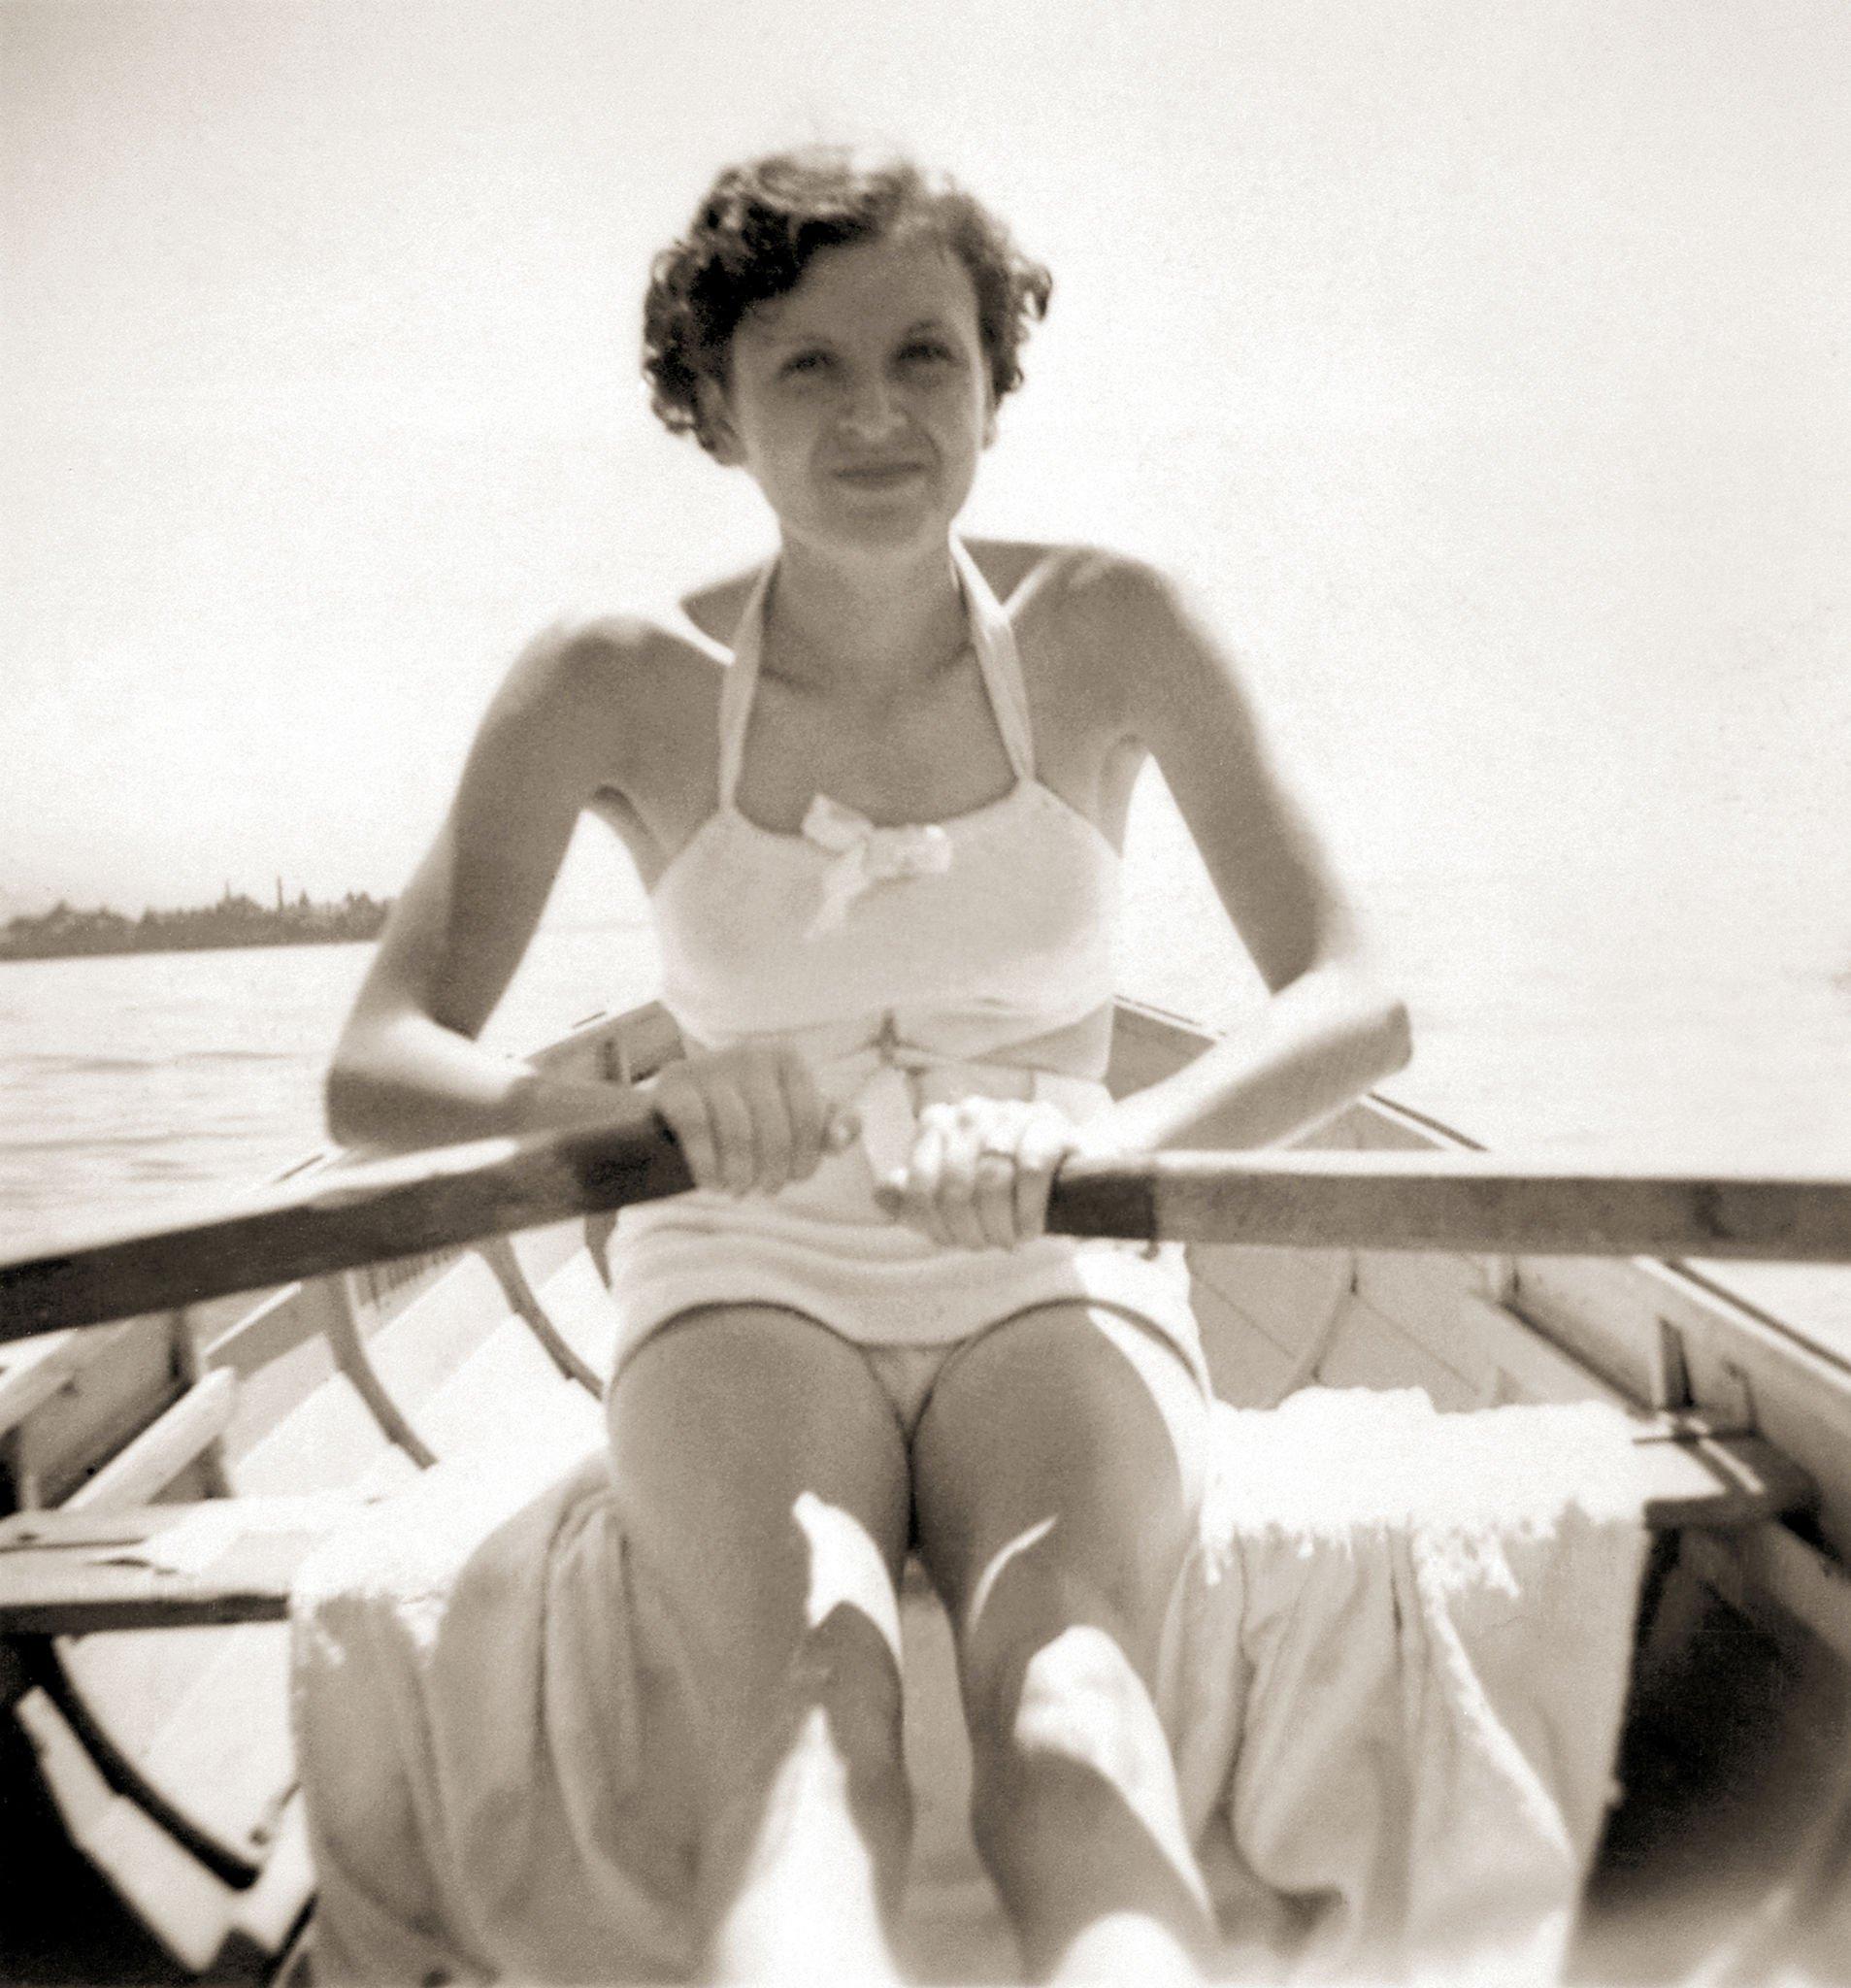 Eva Braun often served as a model for Heinrich Hoffmann